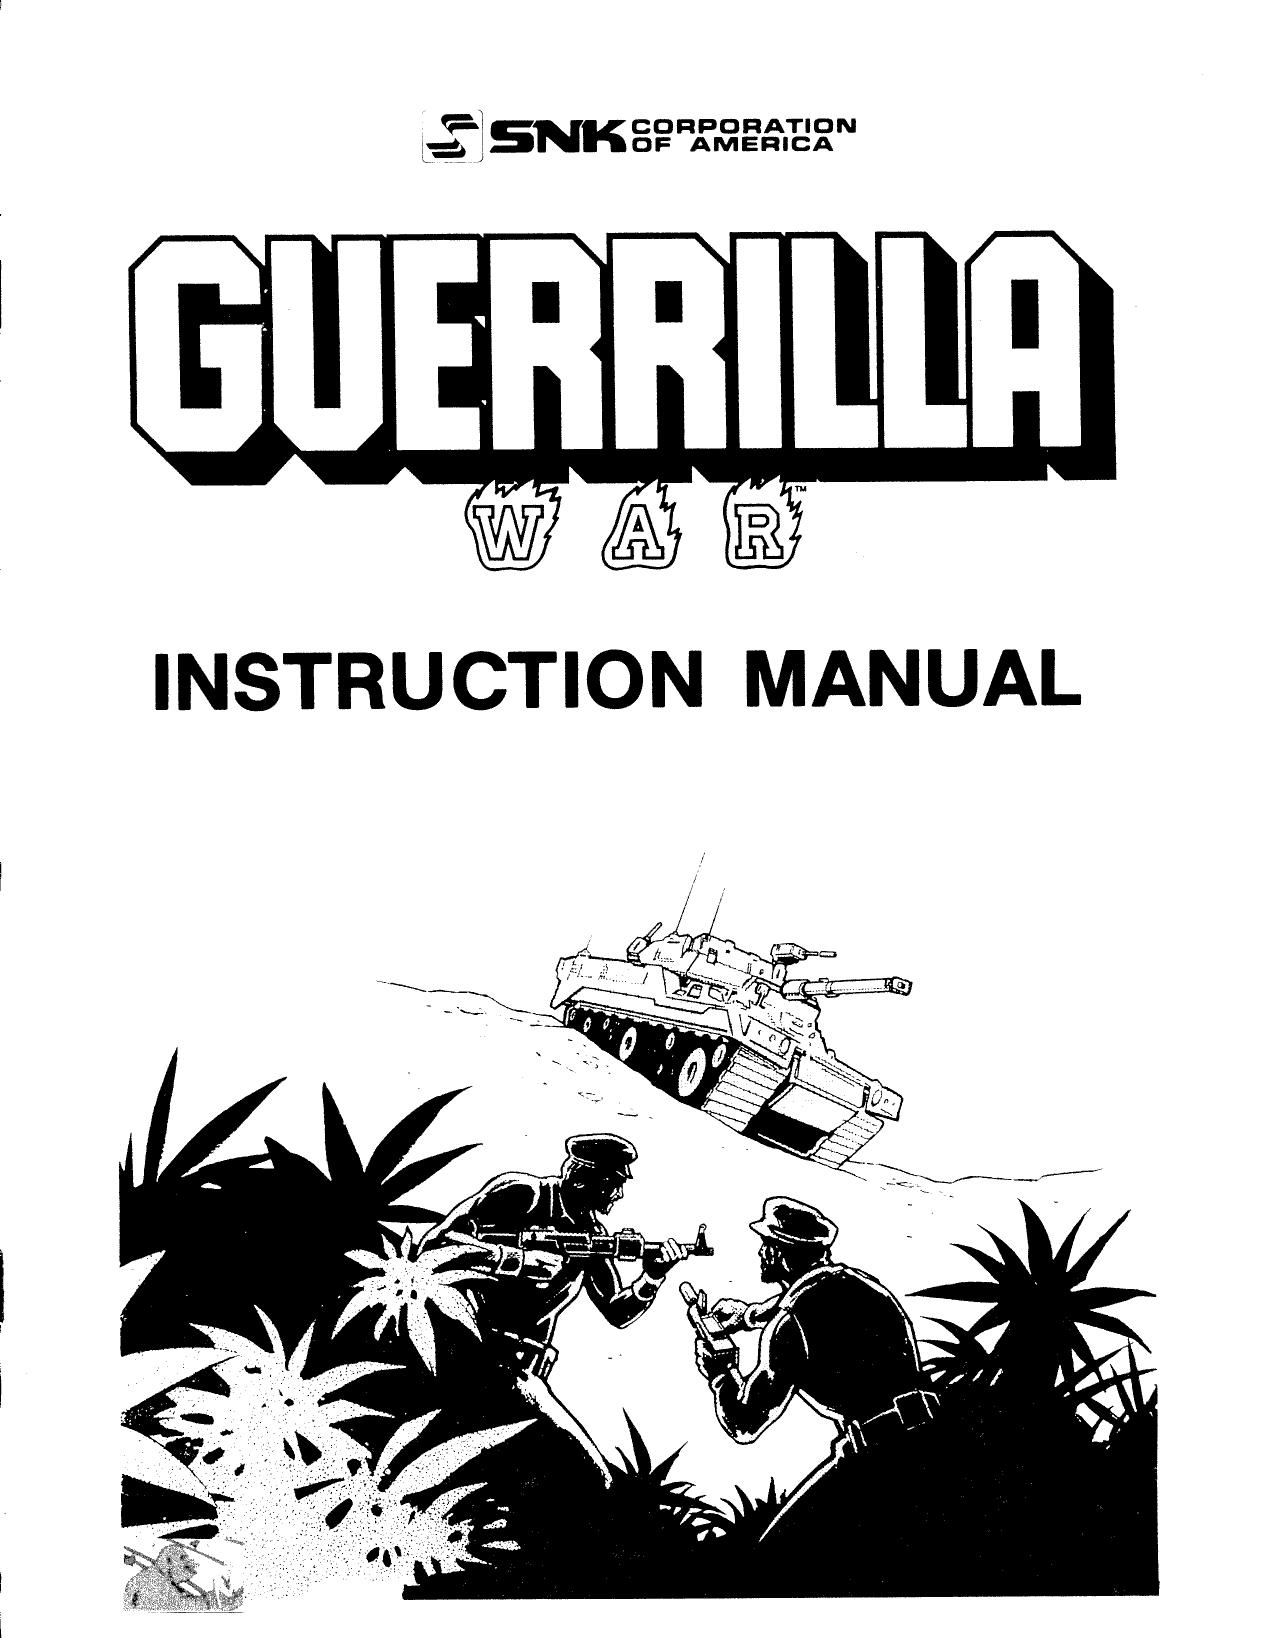 GuerrillaWar Manual